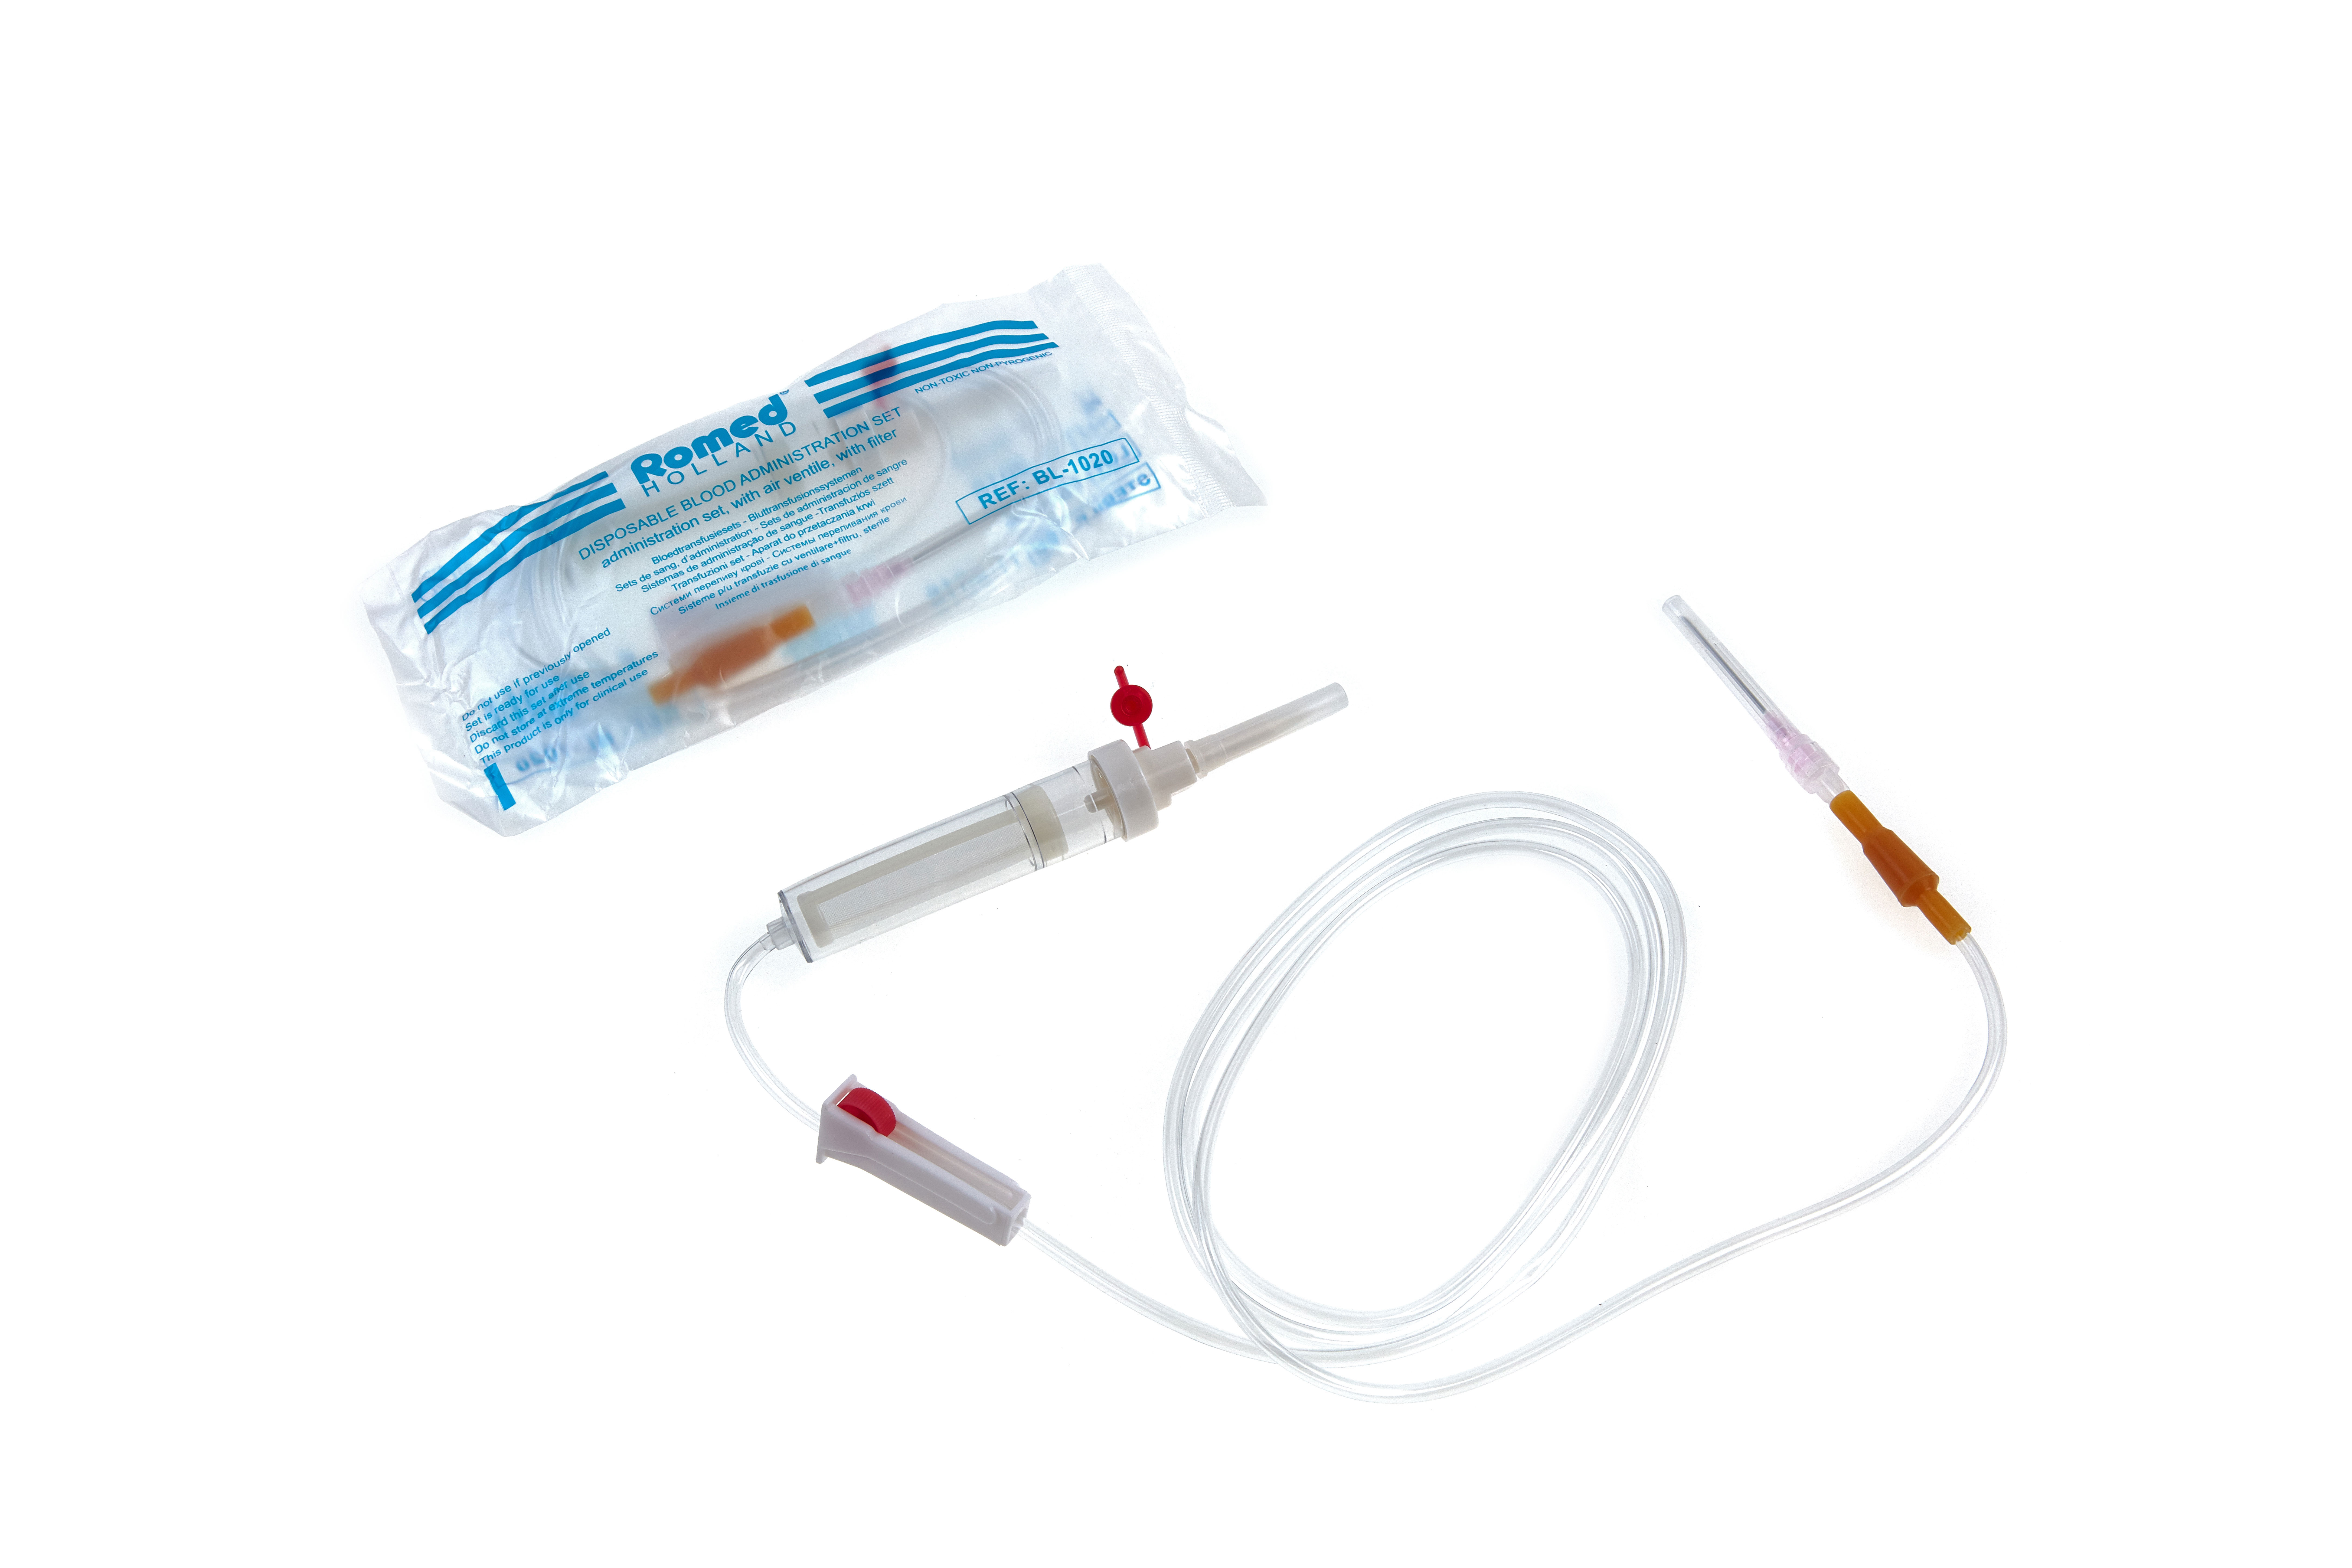 BL-1020 Conjuntos de administração de sangue Romed com ventila de ar + filtro, estéreis, à un. em saco de polietileno, 250 un. por caixa de envio.